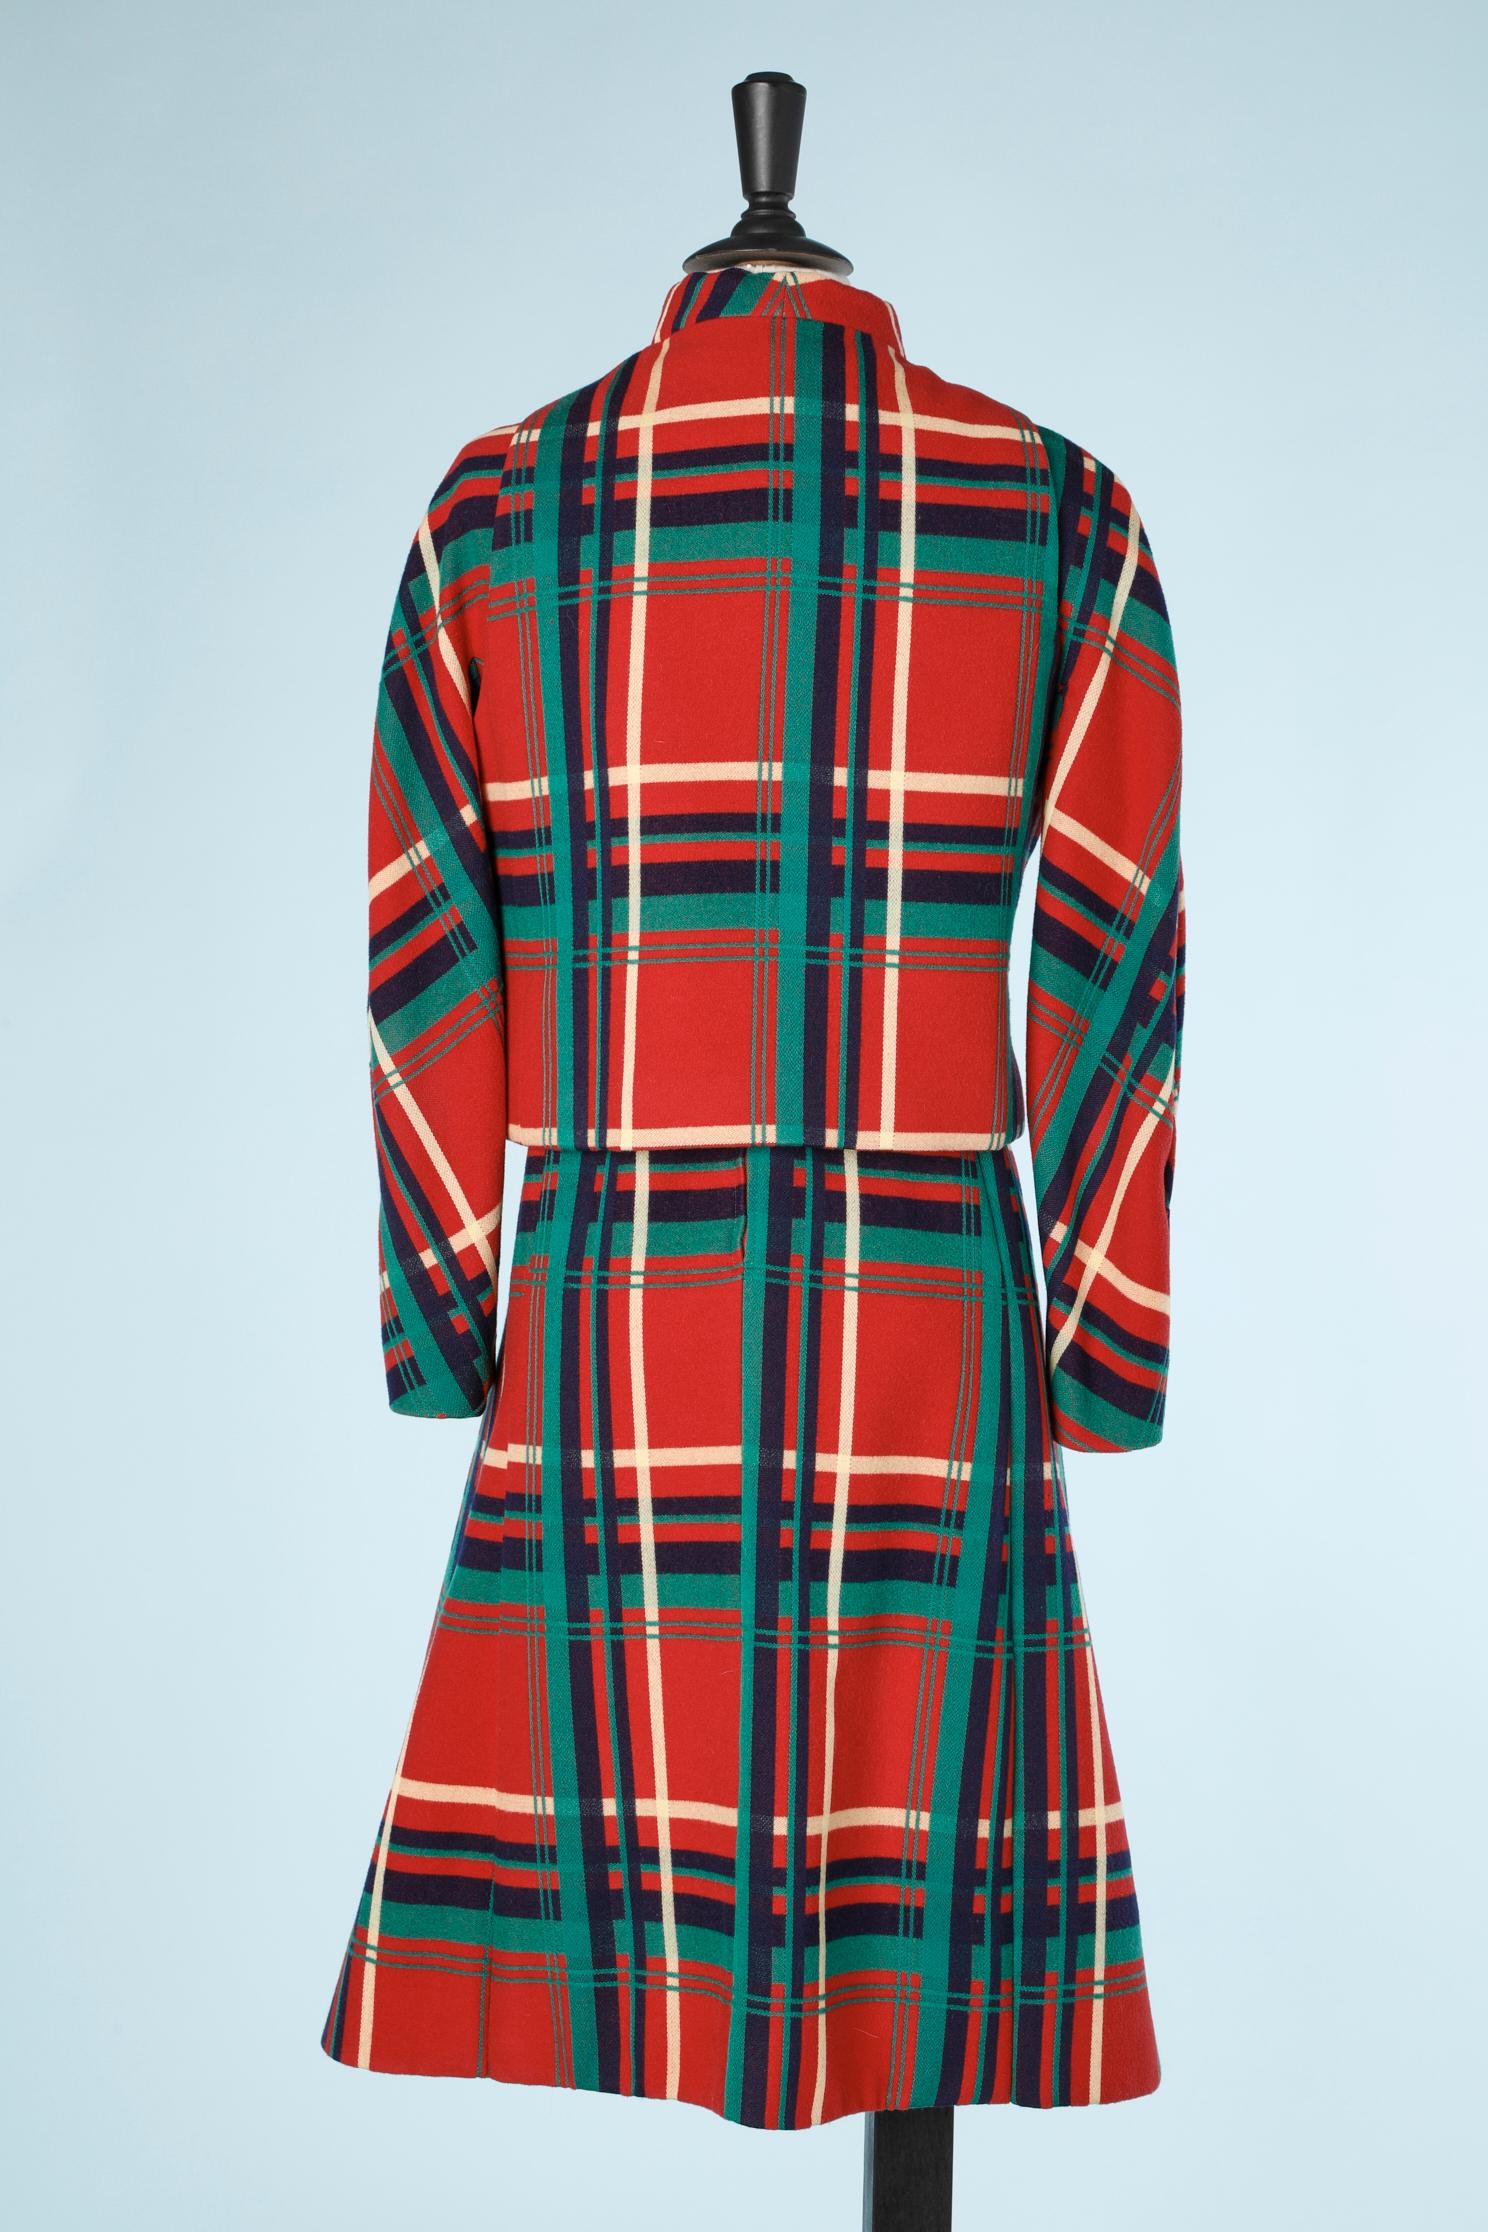 Dress-suit  in wool tartan with 